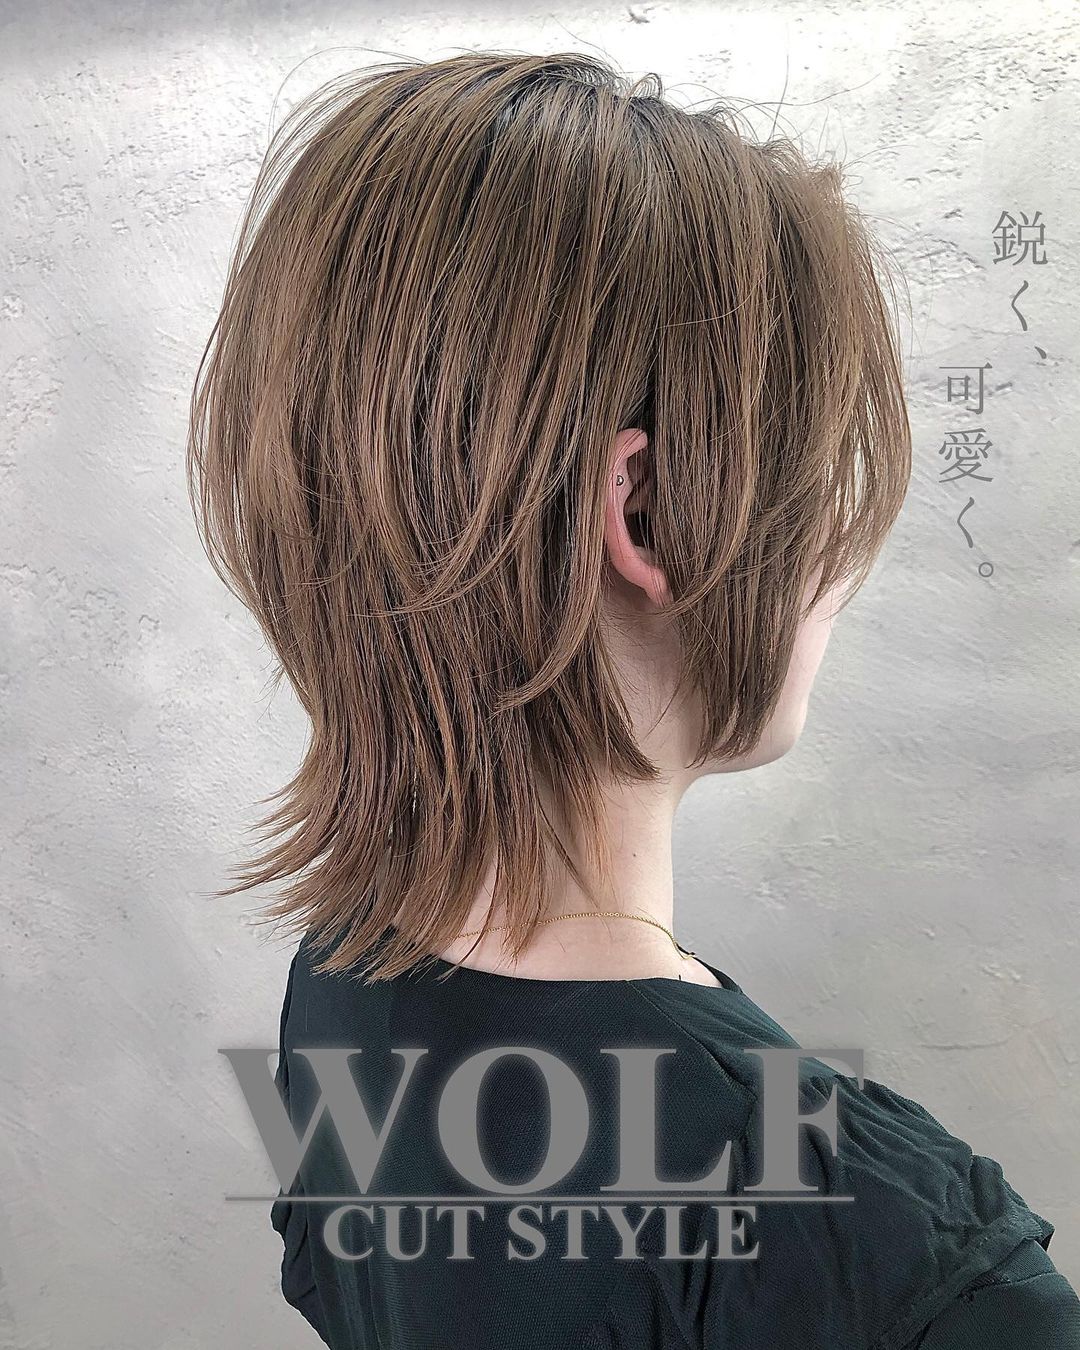 Wolf Cut 1 